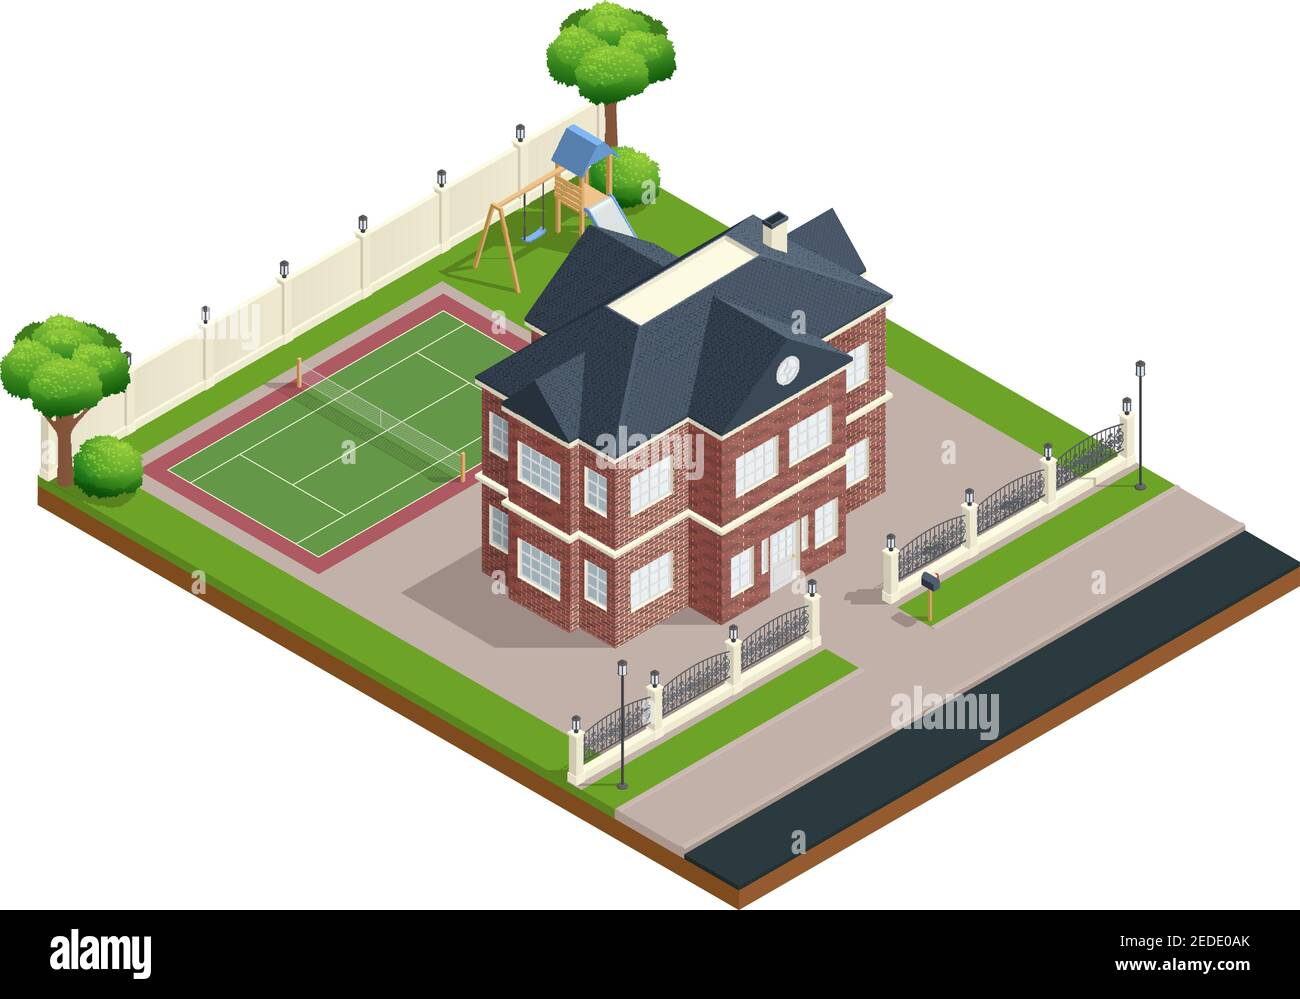 Vorort Haus isometrische Zusammensetzung mit Sportplatz und Bäume Vektor Abbildung Stock Vektor